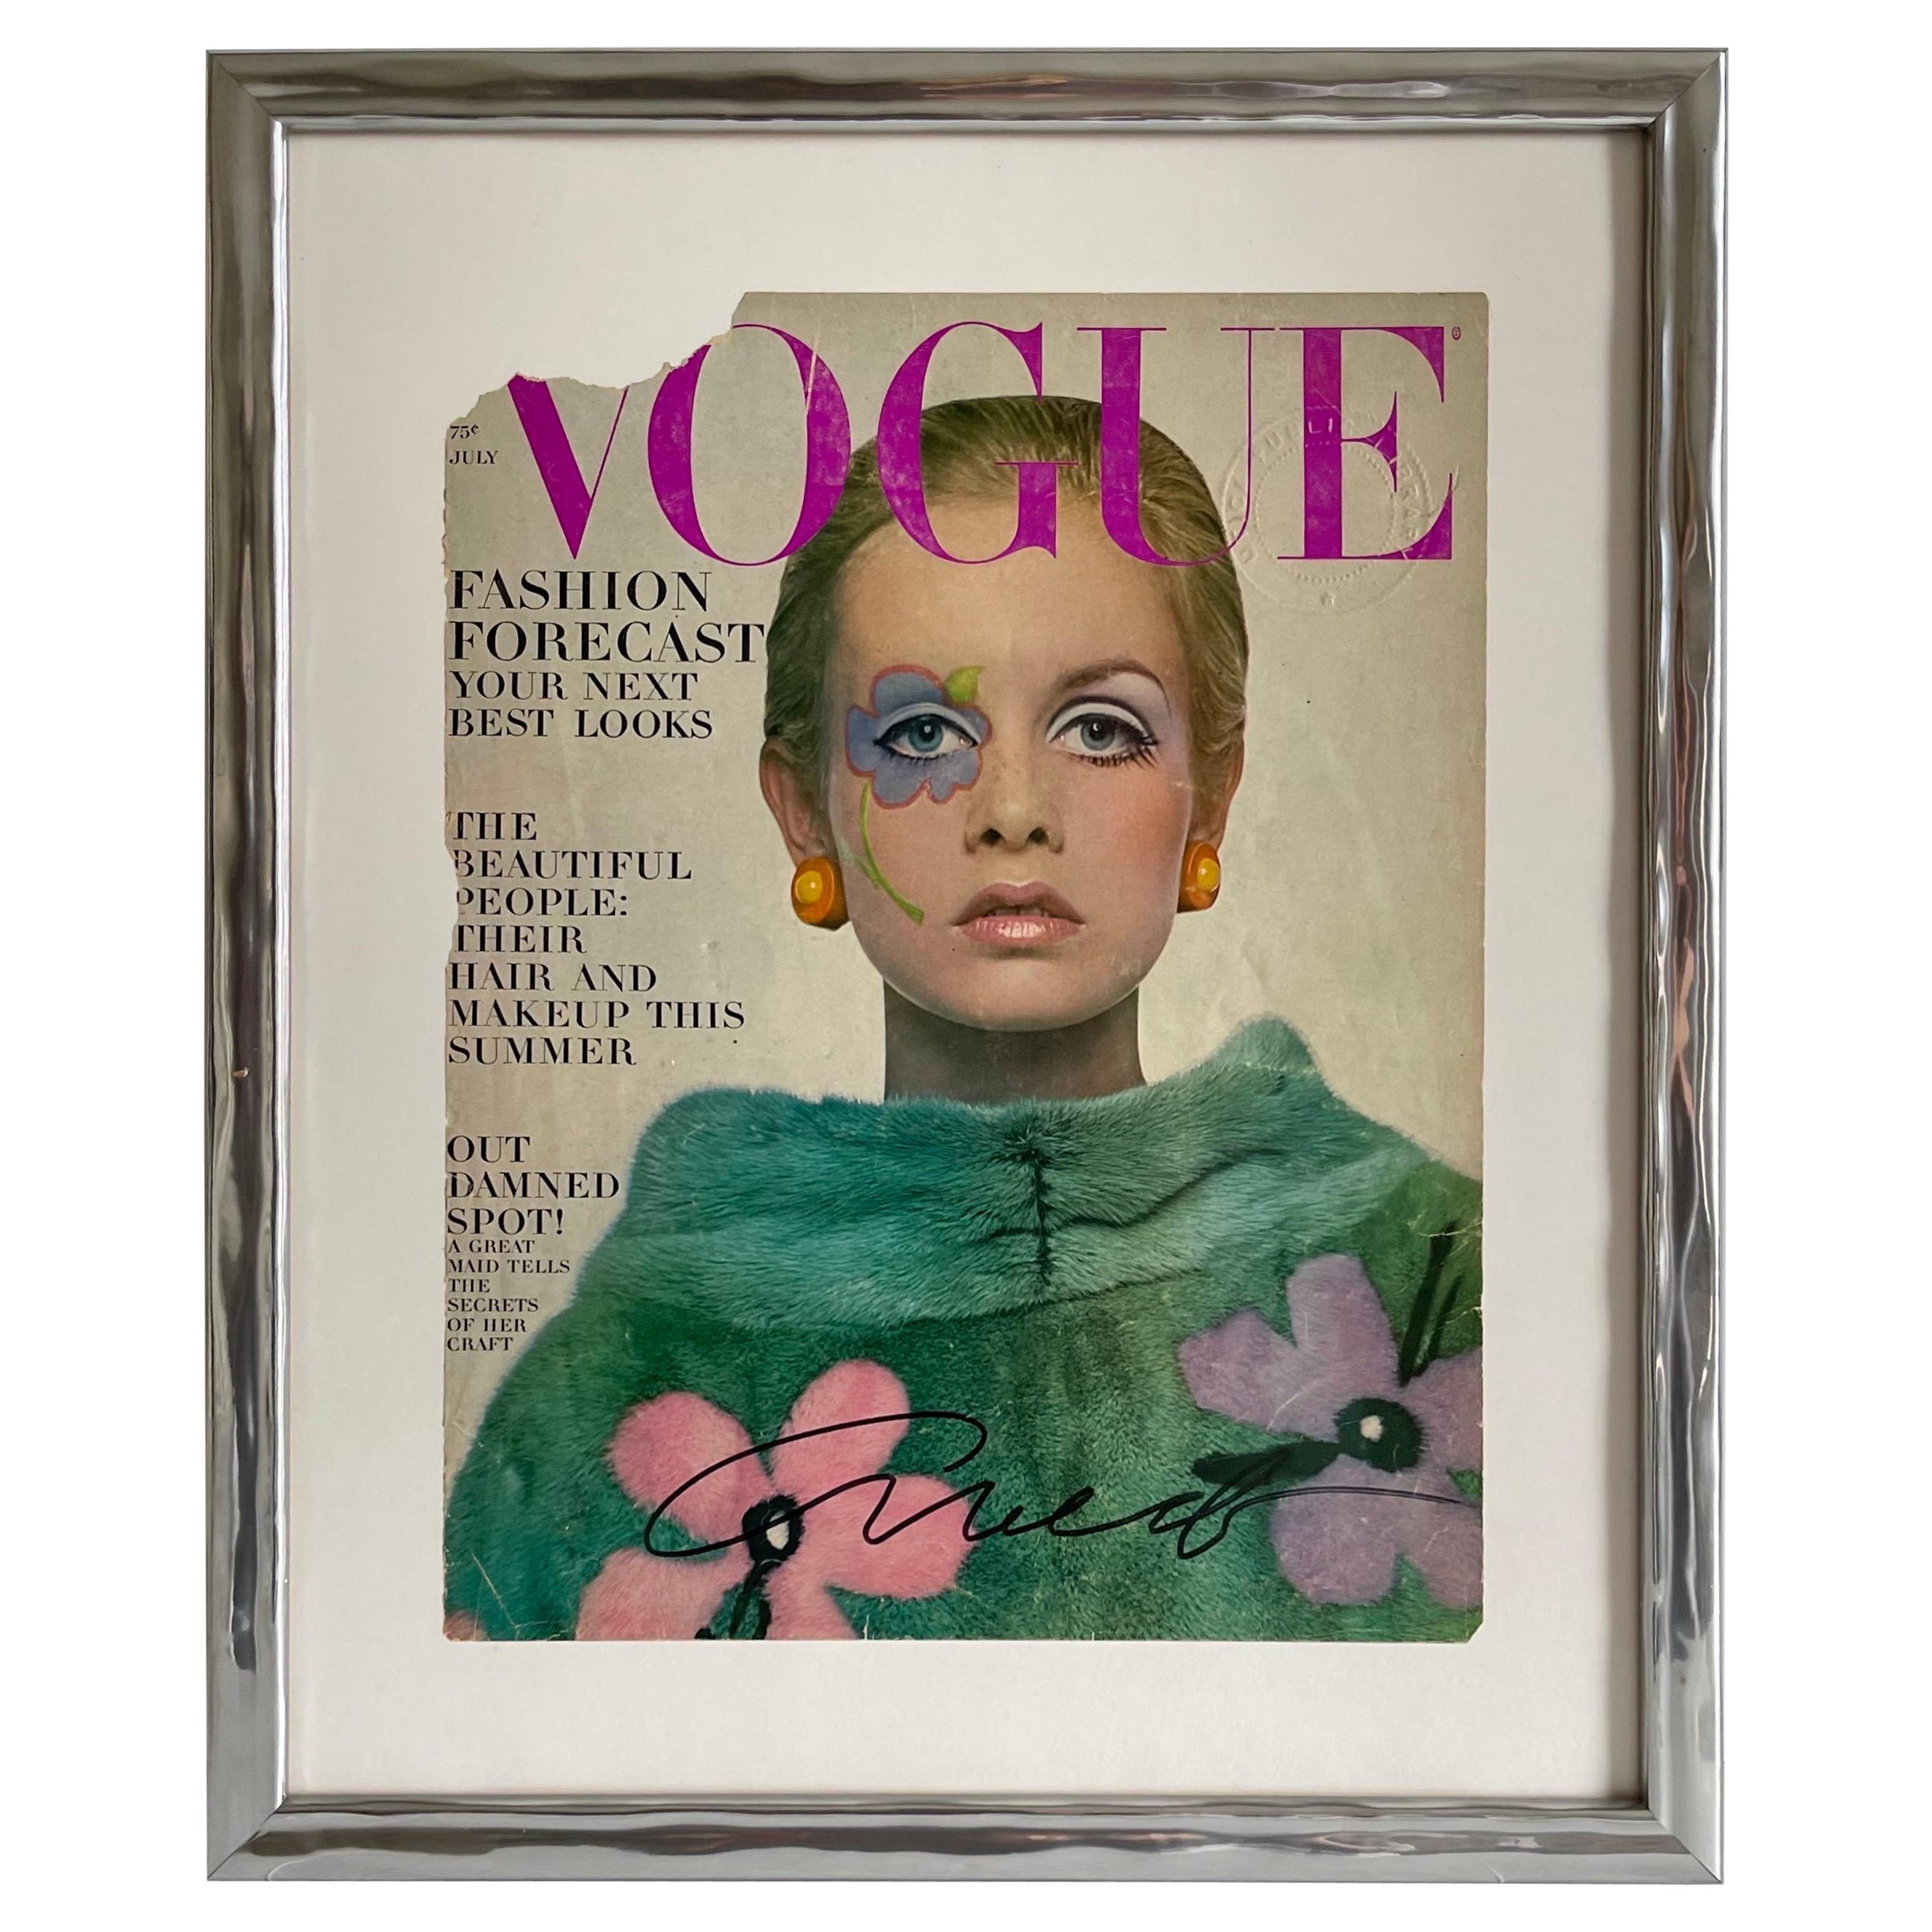 Vogue juillet 1967, signé par Richard Avedon